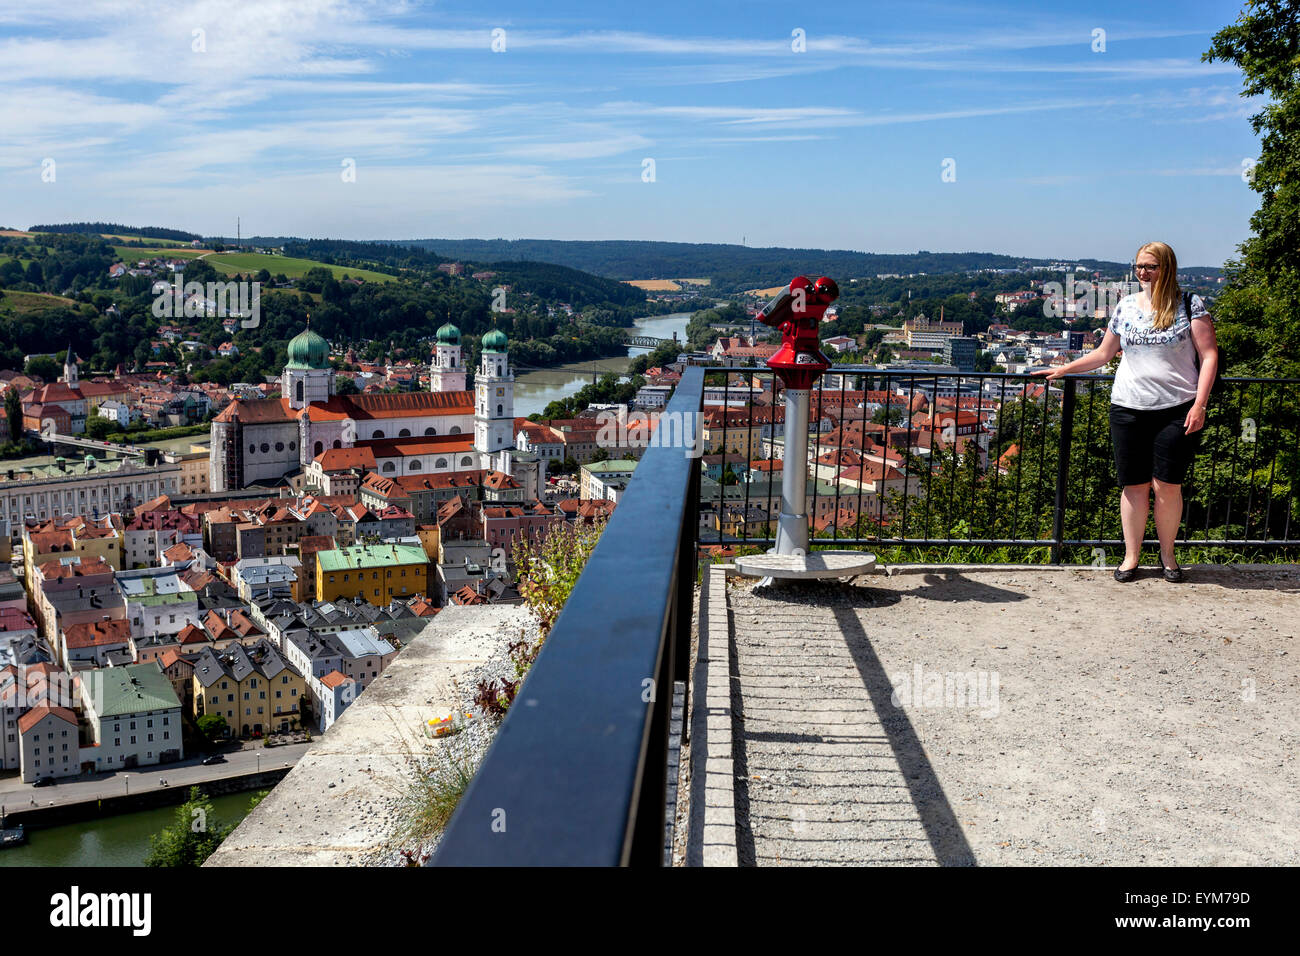 Vue de la ville de Passau avec vue sur le Danube, la Basse Bavière, Allemagne, Europe Banque D'Images